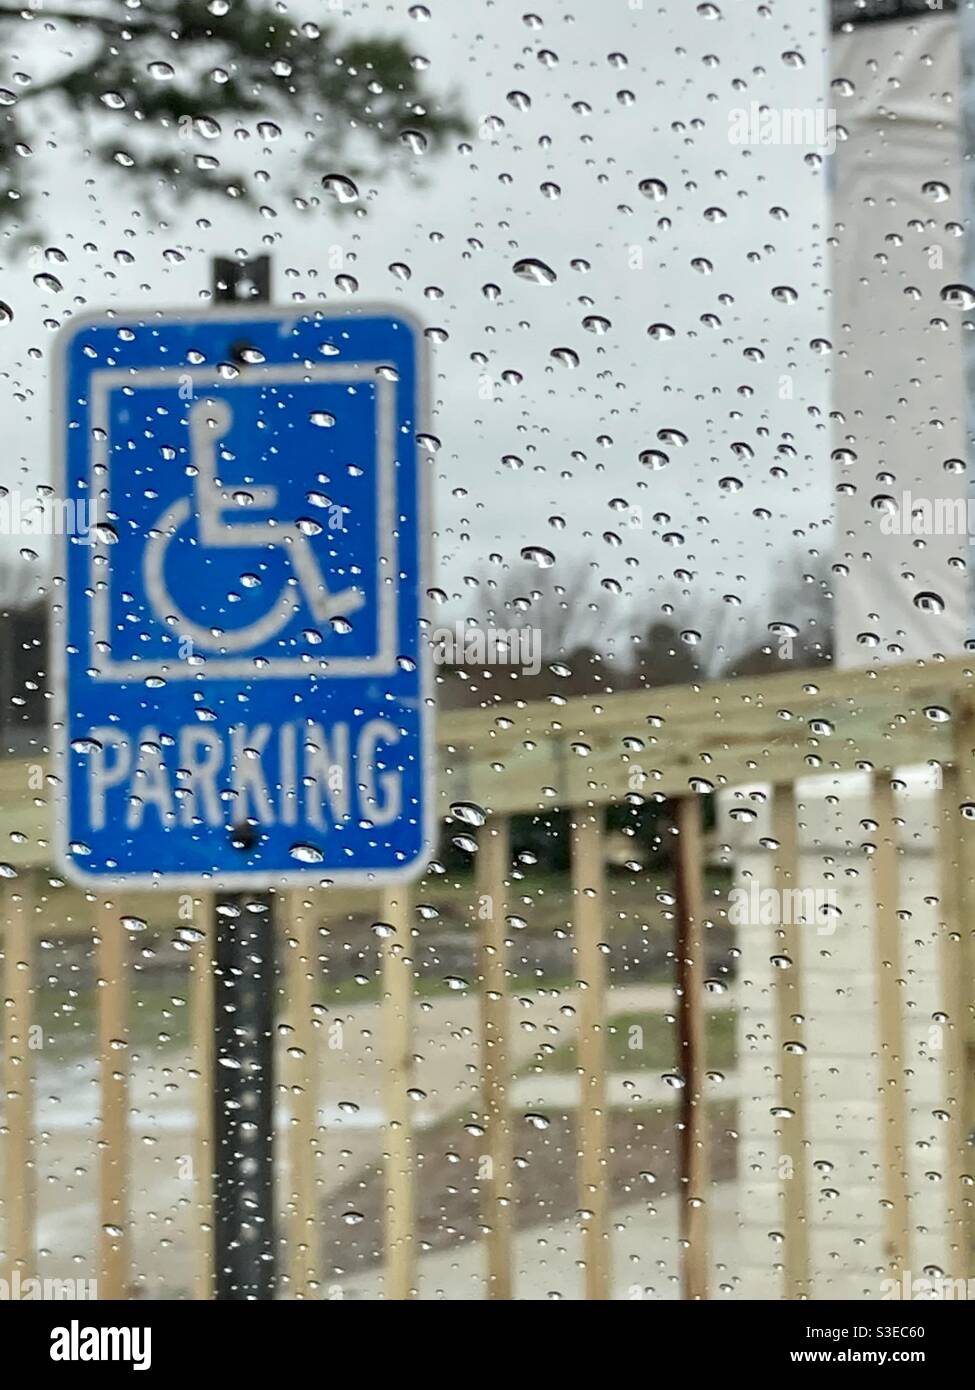 Behindertenparkschild bei Regen Stockfoto